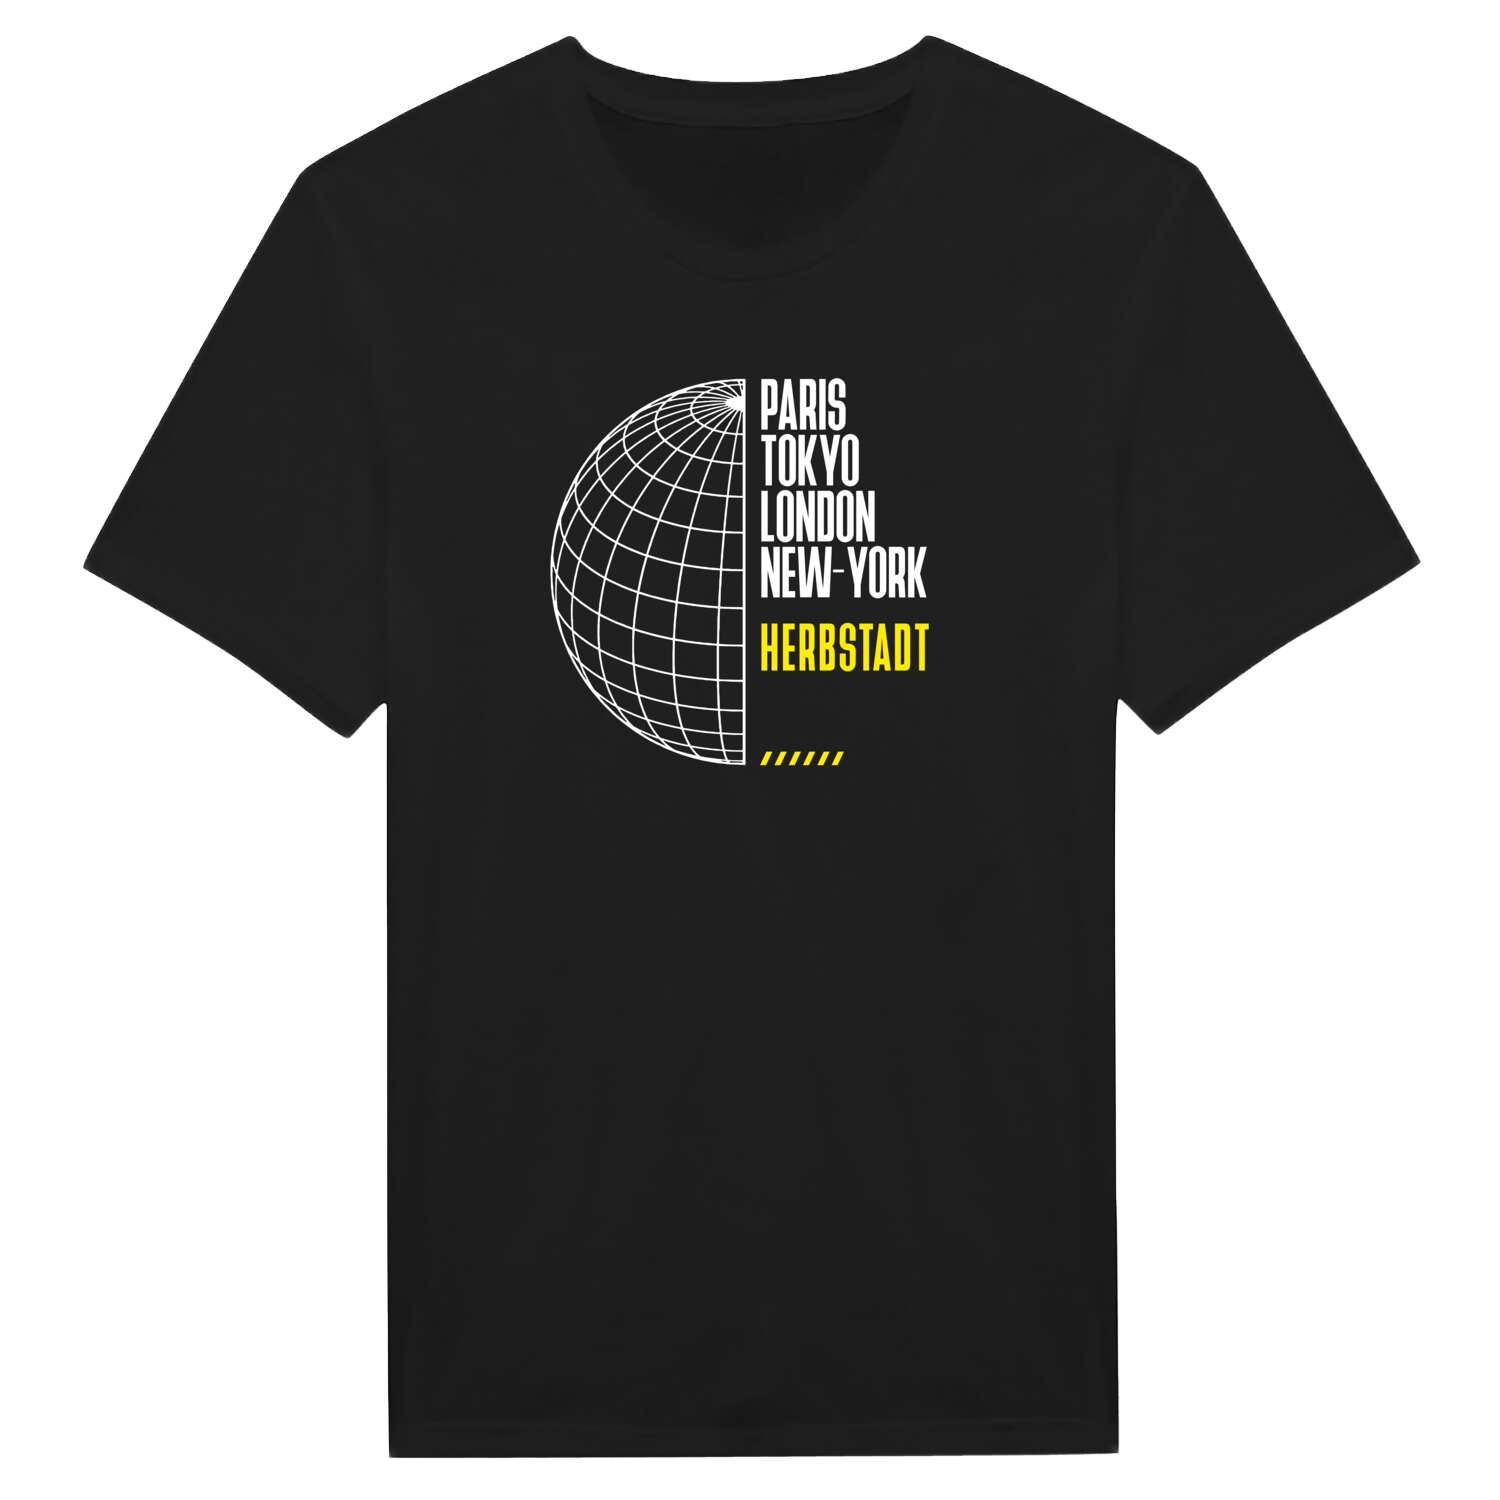 Herbstadt T-Shirt »Paris Tokyo London«